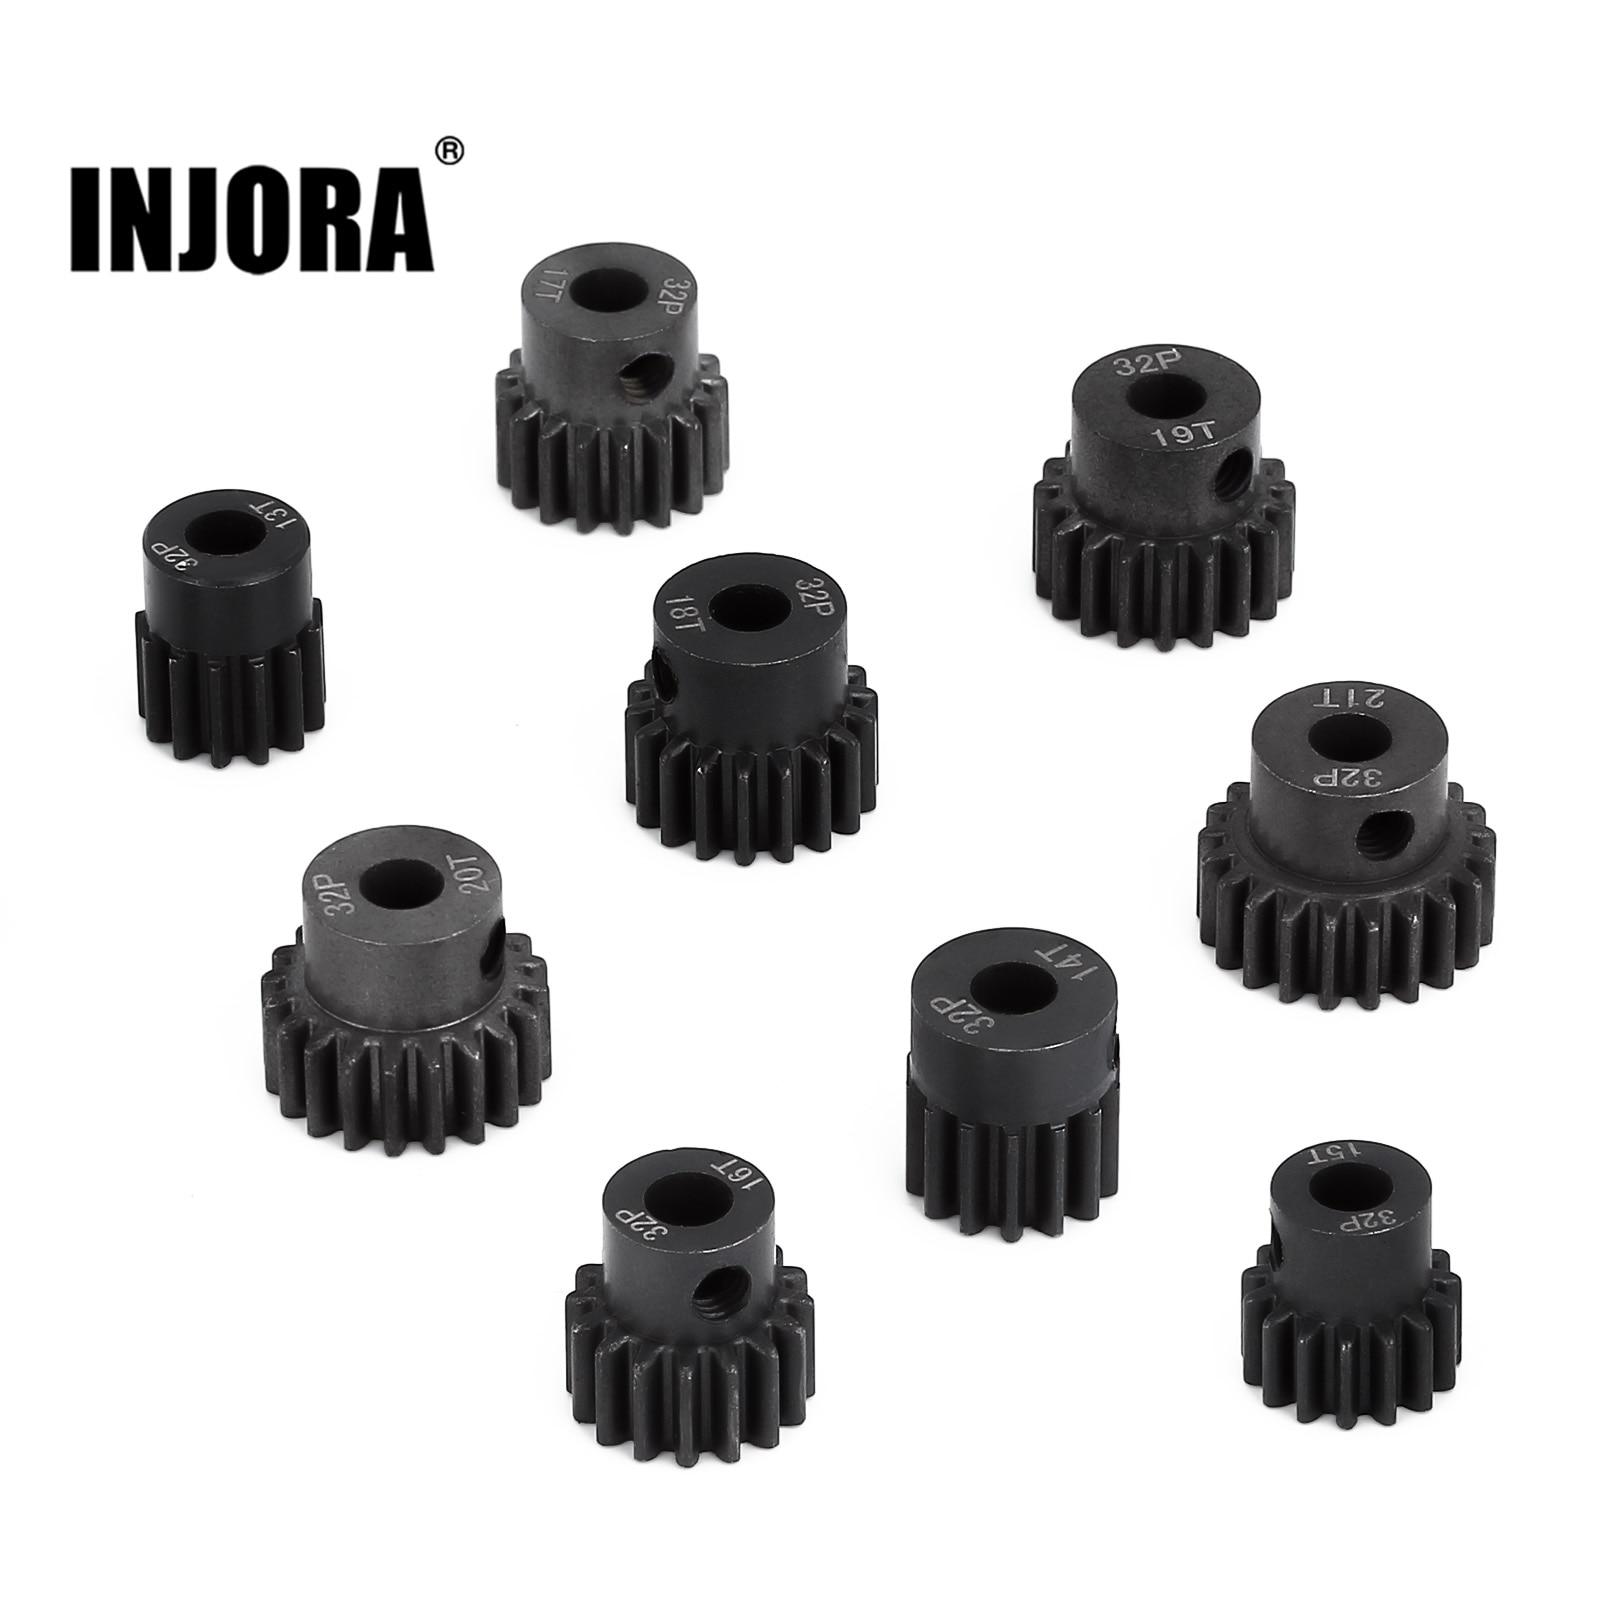 INJORA-1PCS-Metal-Steel-5mm-M0-8-32P-Motor-Gear-Pinion-13T-14T-15T-16T-17T.jpg